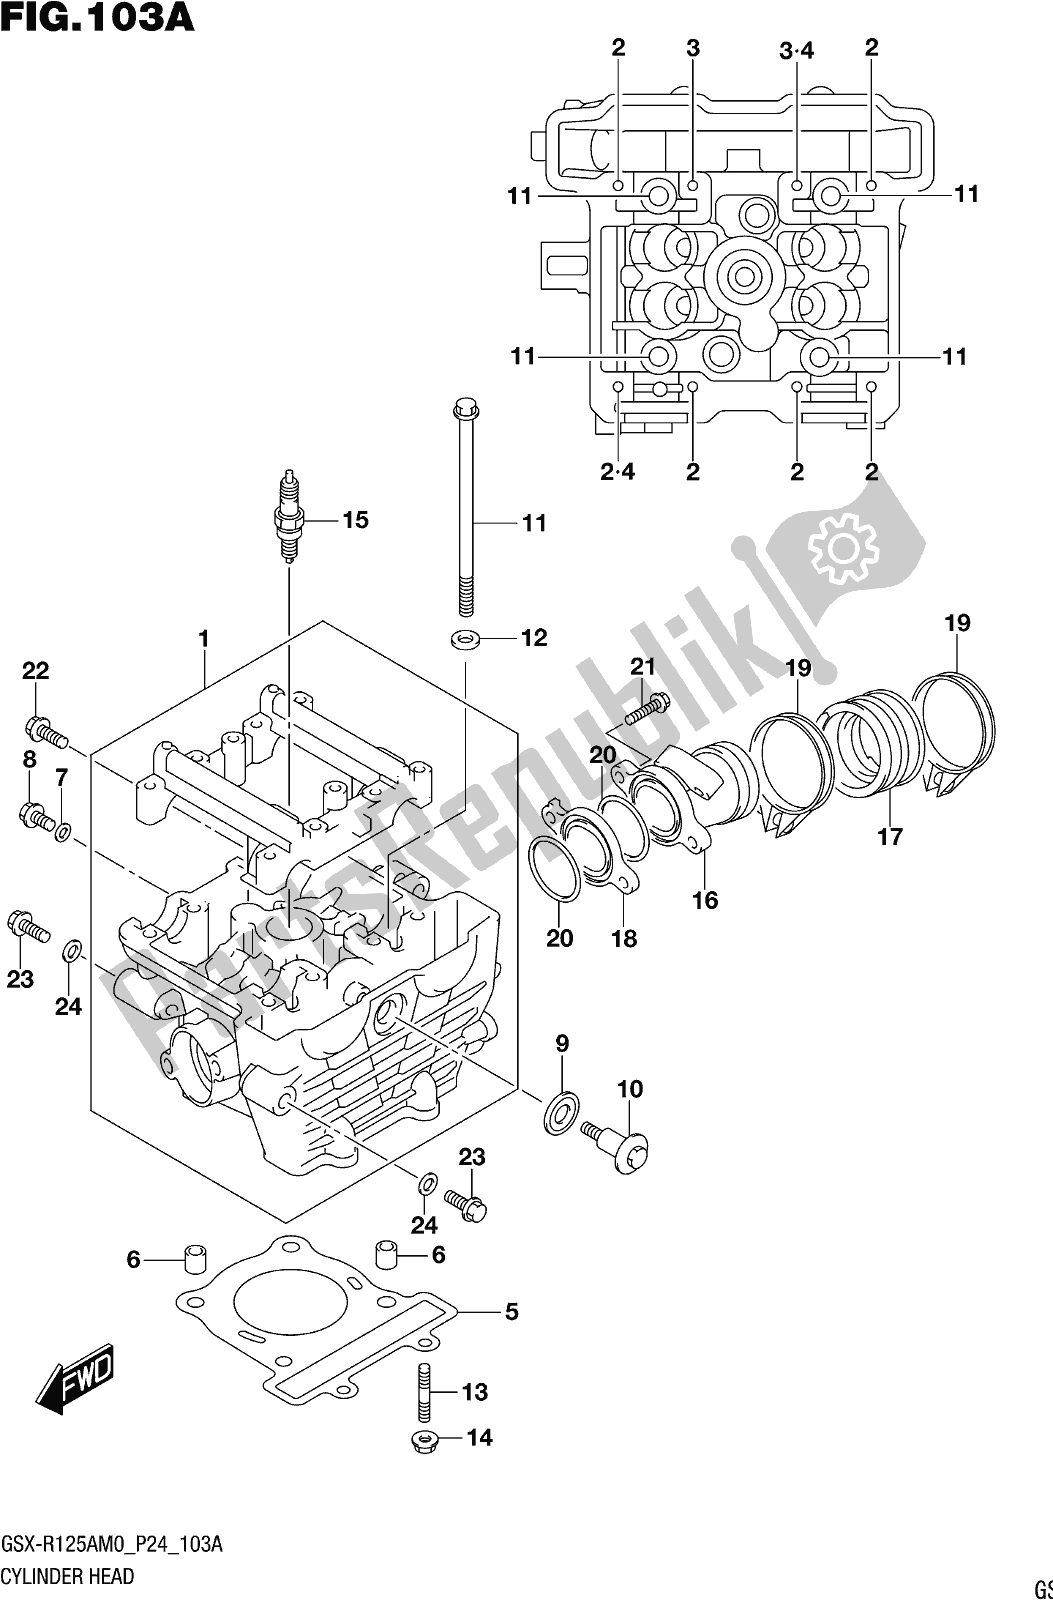 Toutes les pièces pour le Fig. 103a Cylinder Head du Suzuki Gsx-r 125A 2020